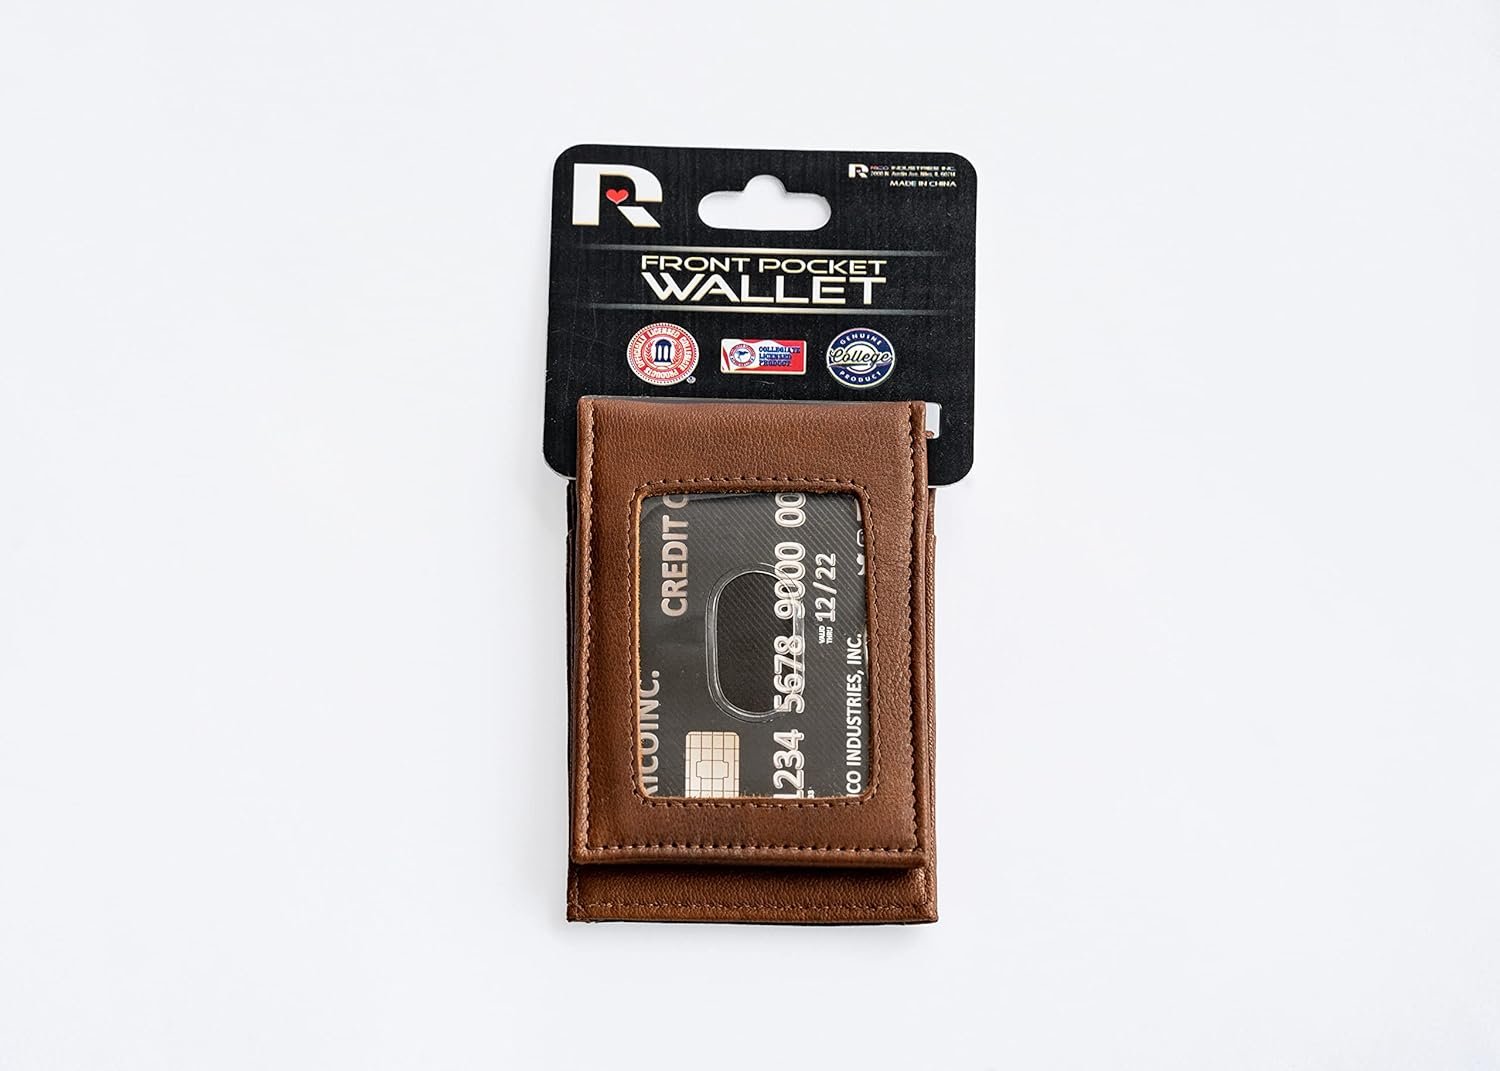 Columbus Blue Jackets Premium Black Leather Wallet, Front Pocket Magnetic Money Clip, Laser Engraved, Vegan